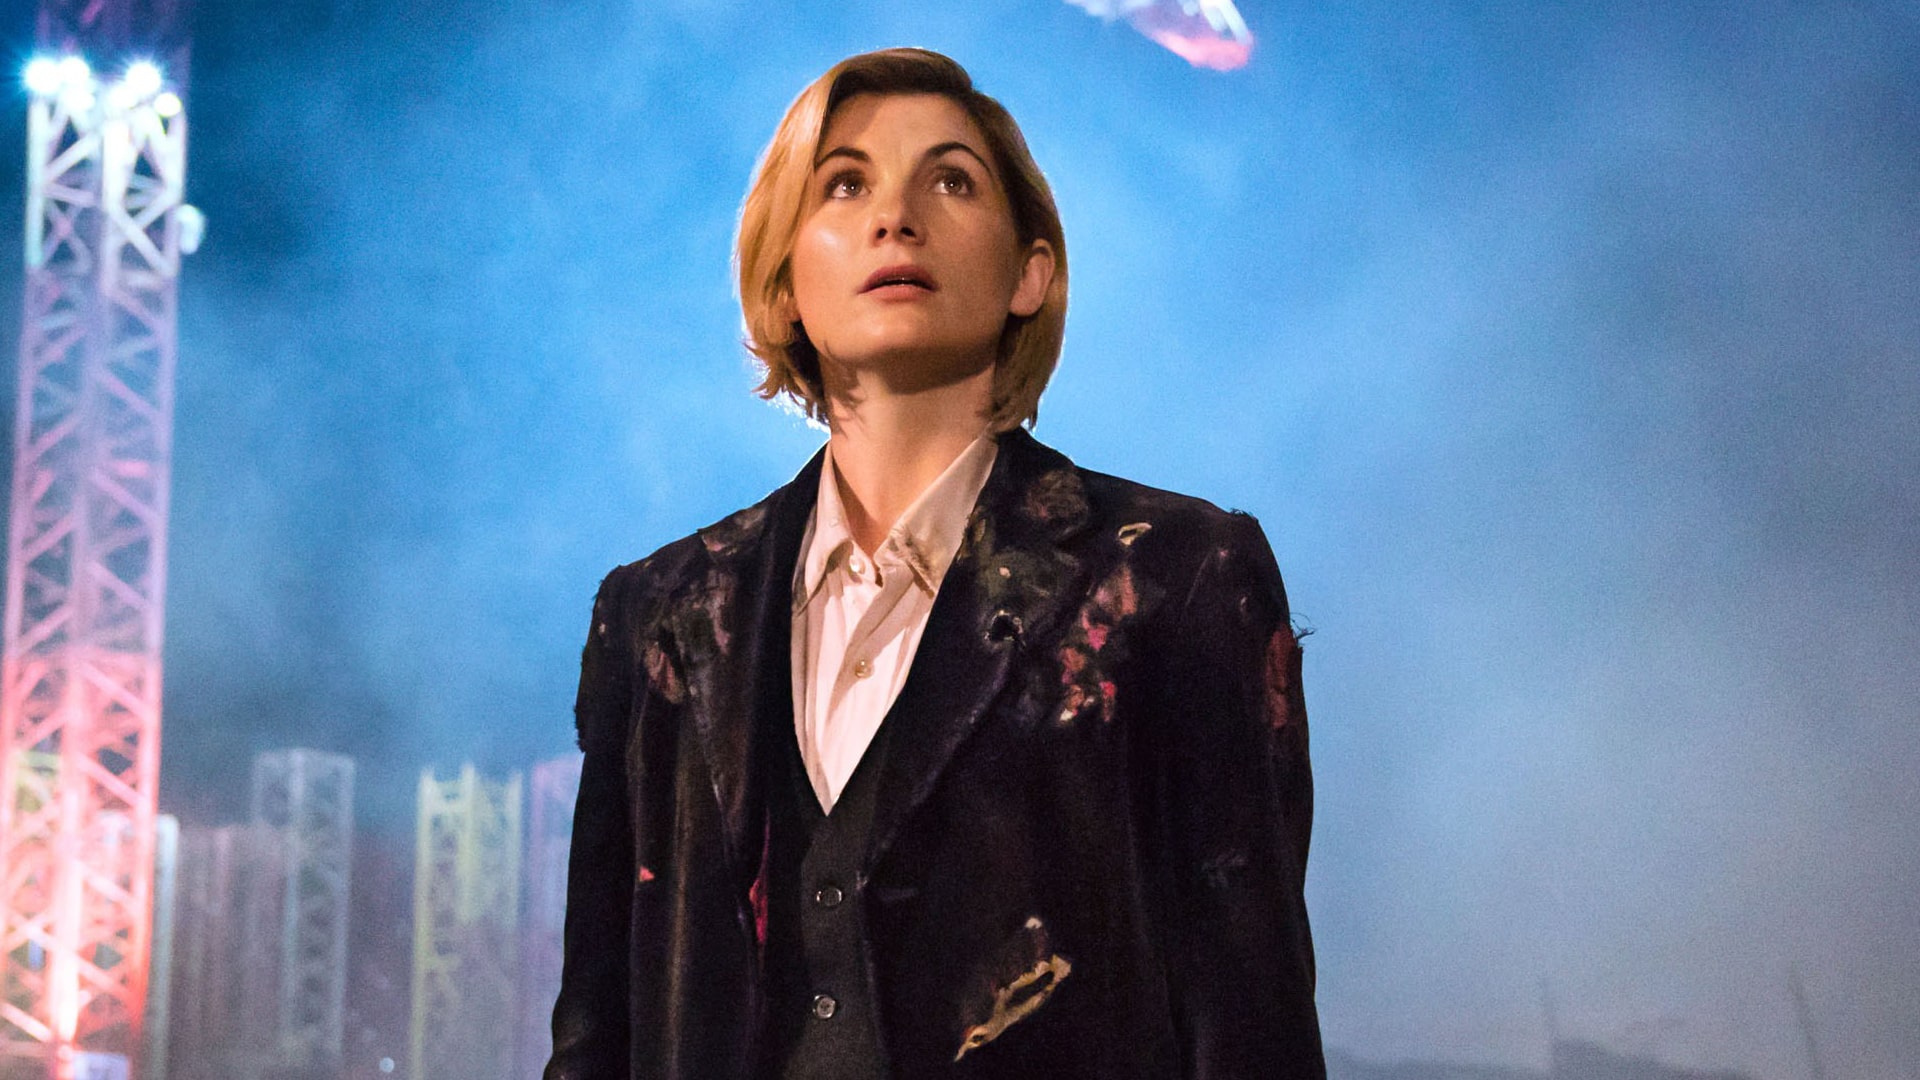 Editoriale | Doctor Who: con Jodie Whittaker comincia una nuova era per la serie TV